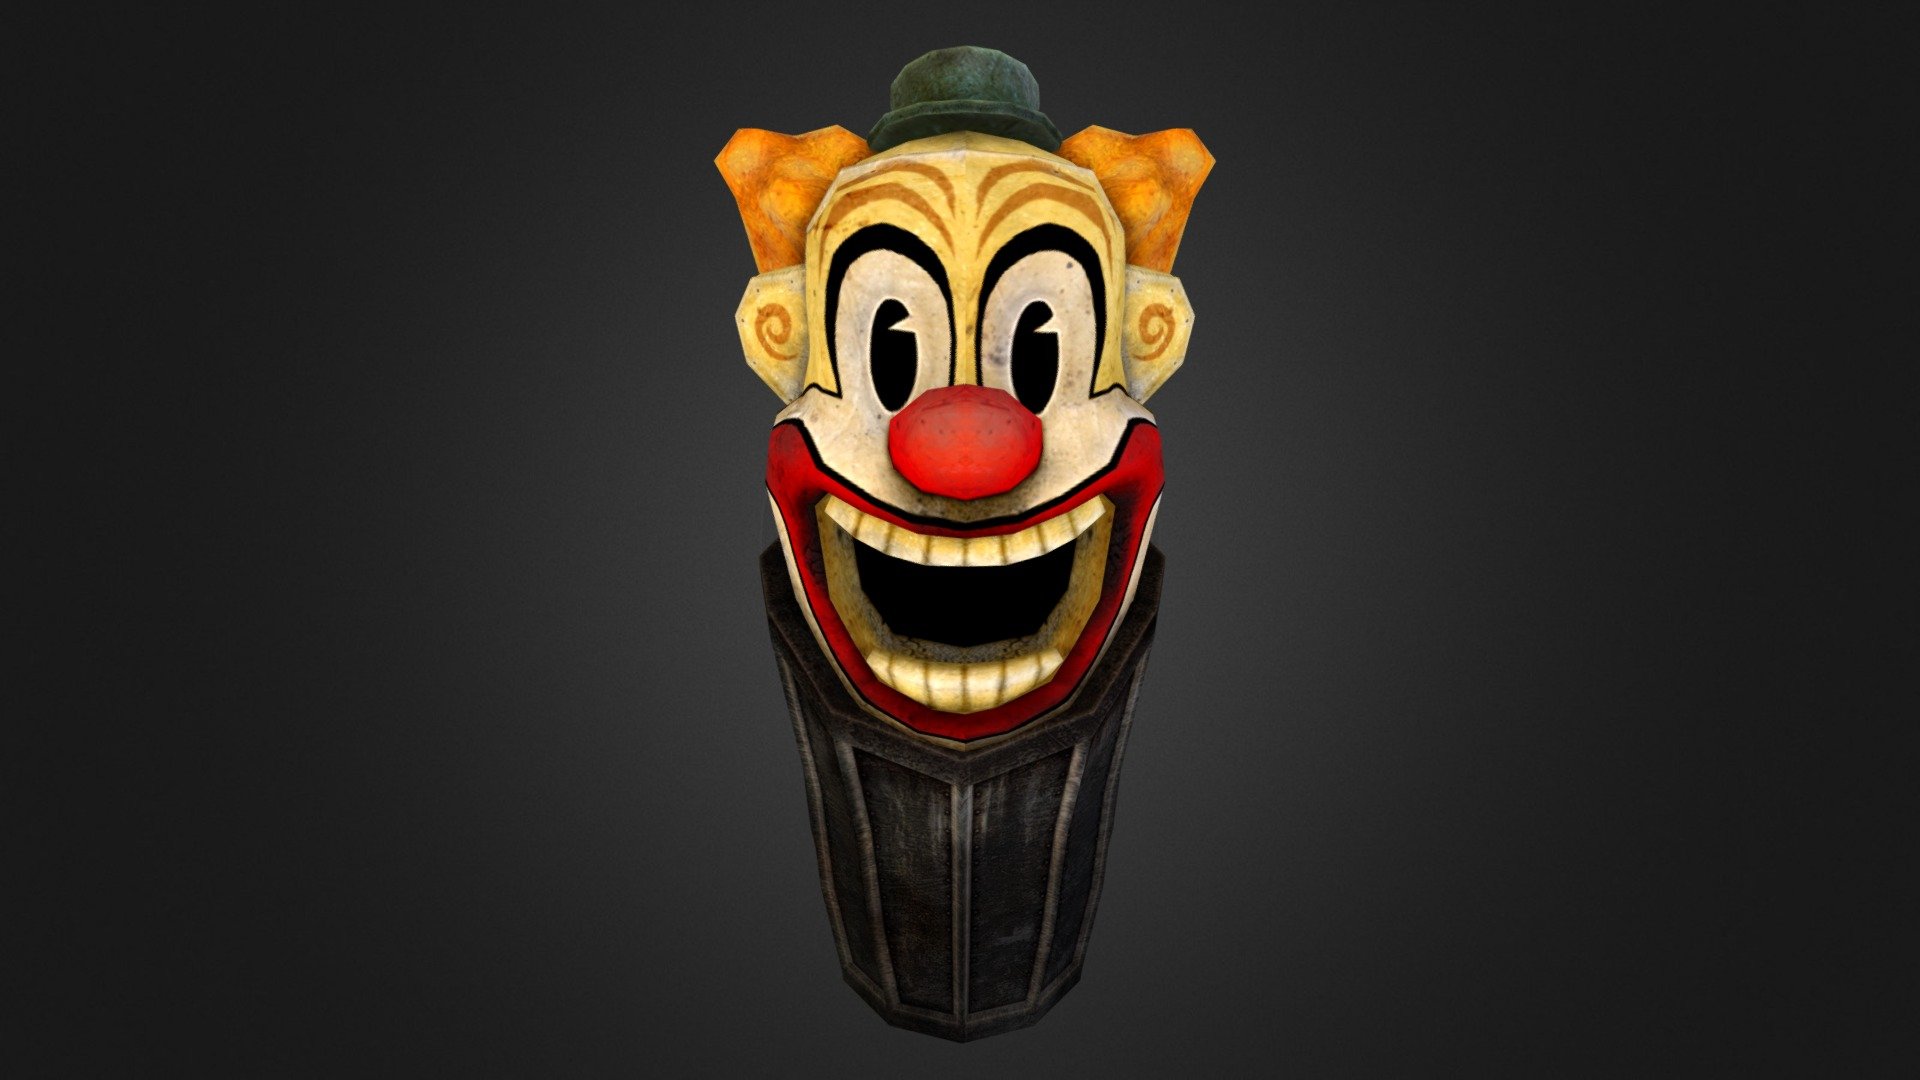 a simple dustpin - Clown Dustbin - 3D model by Lehar 3d model